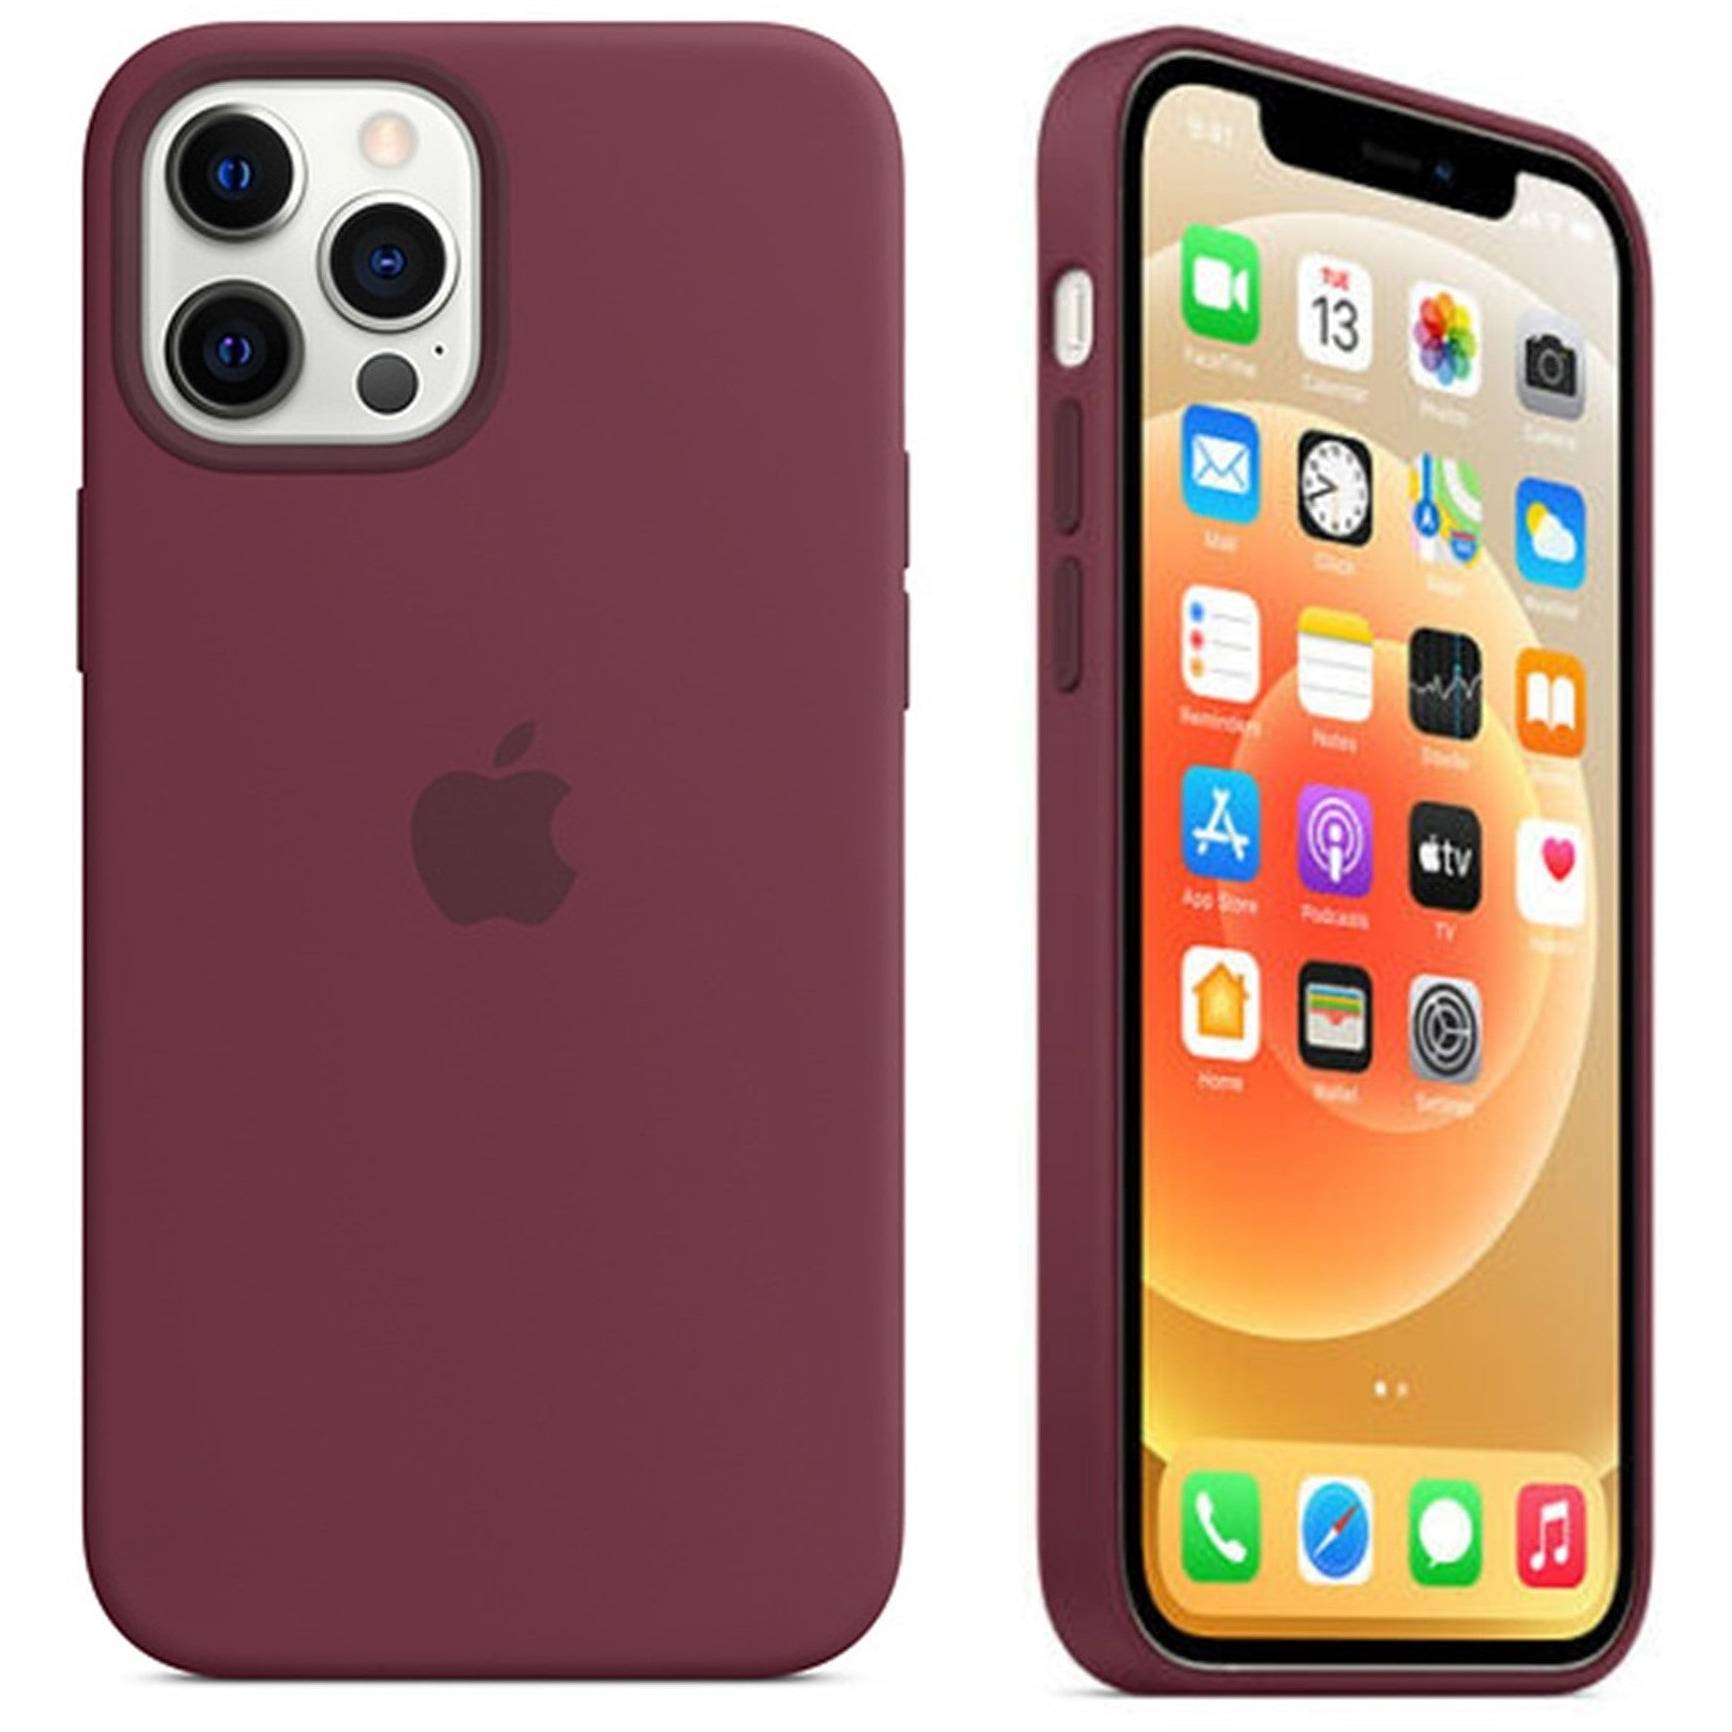 Carcasa de Silicona - iPhone 12 (Colores)